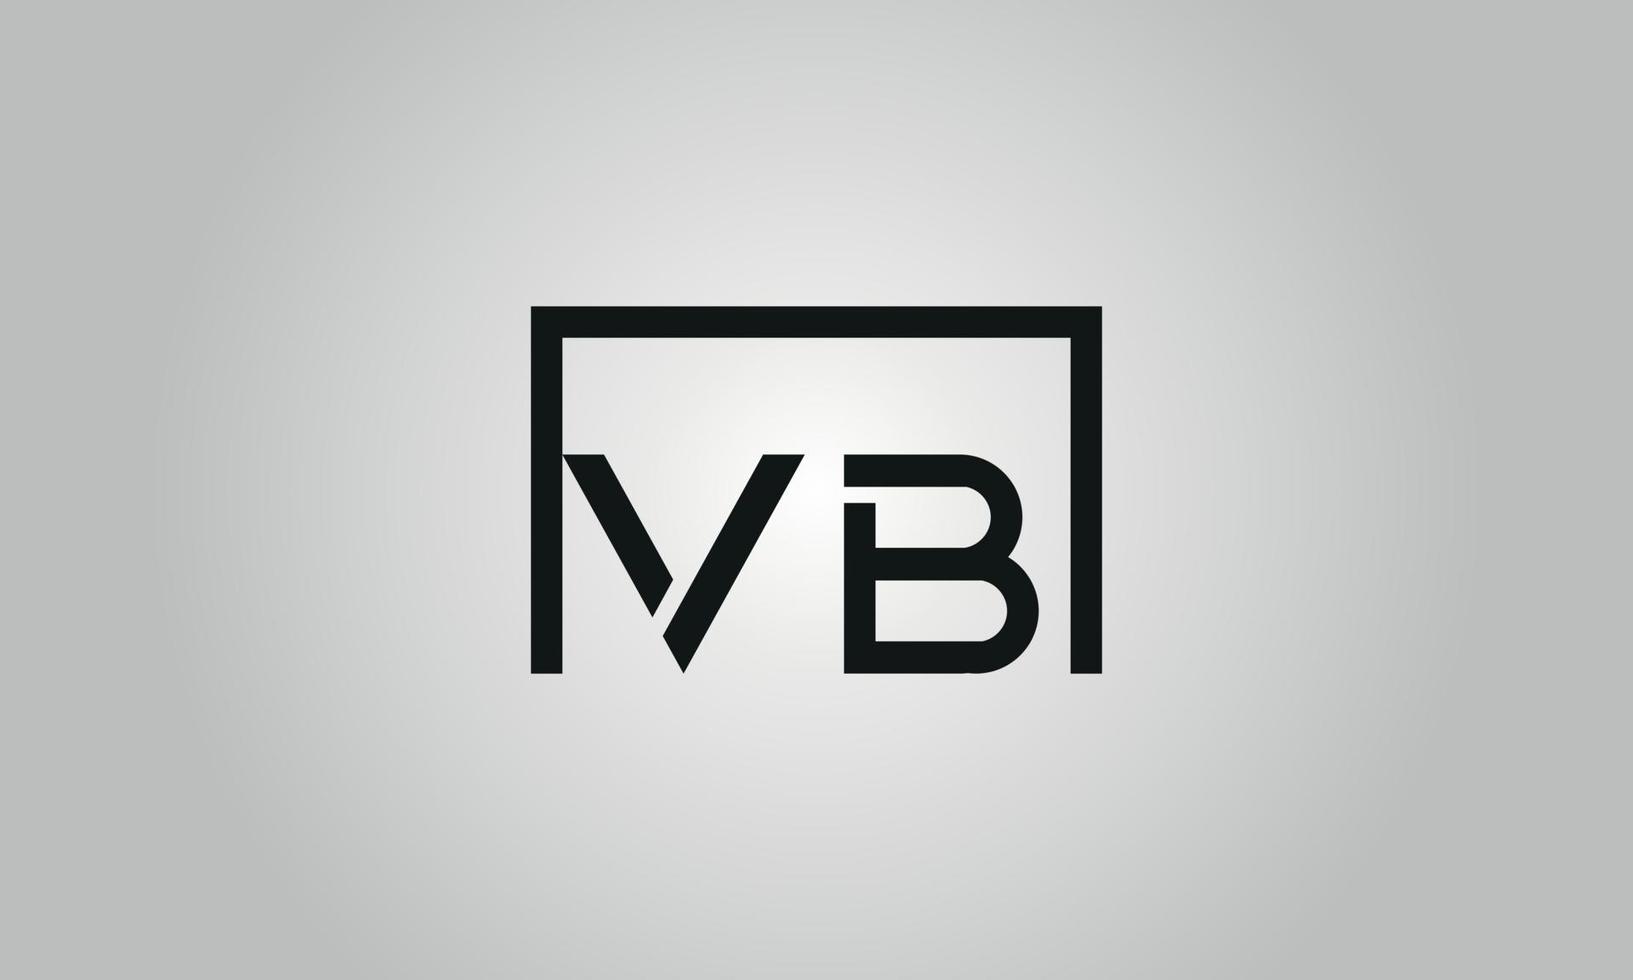 Buchstabe vb Logo-Design. vb-Logo mit quadratischer Form in schwarzen Farben Vektor kostenlose Vektorvorlage.